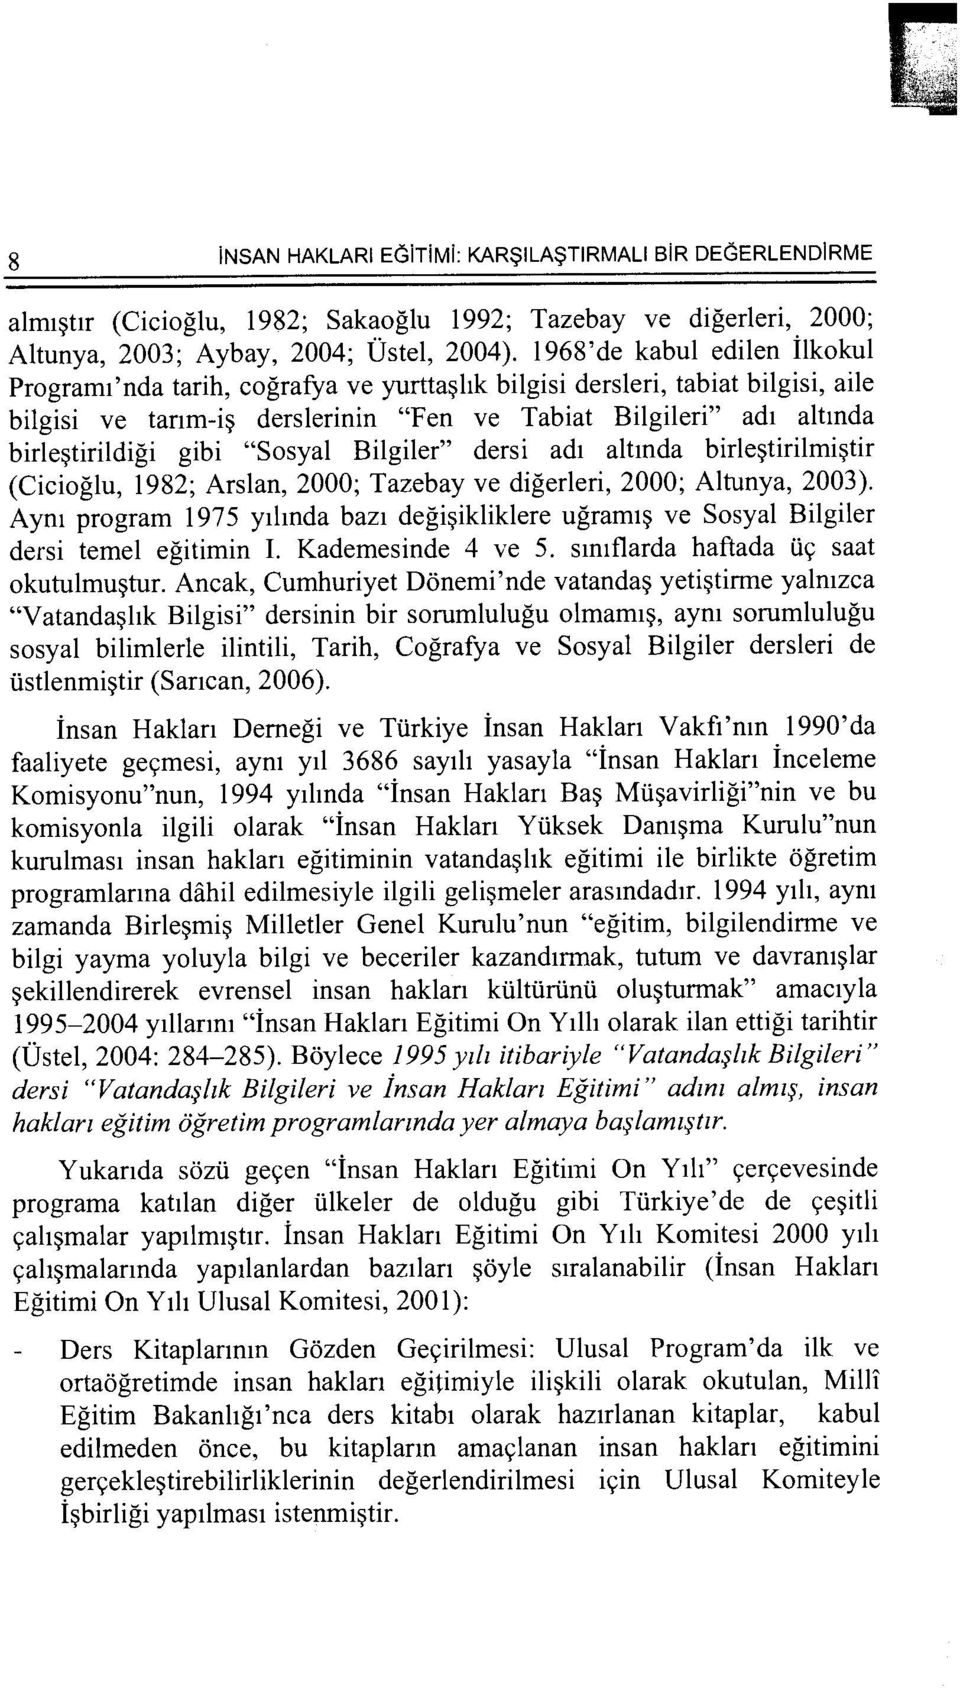 "Sosyal Bilgiler" dersi ad1 altmda birle~tirilmi~tir (Cicioglu, 1982; Arslan, 2000; Tazebay ve digerleri, 2000; Altunya, 2003).